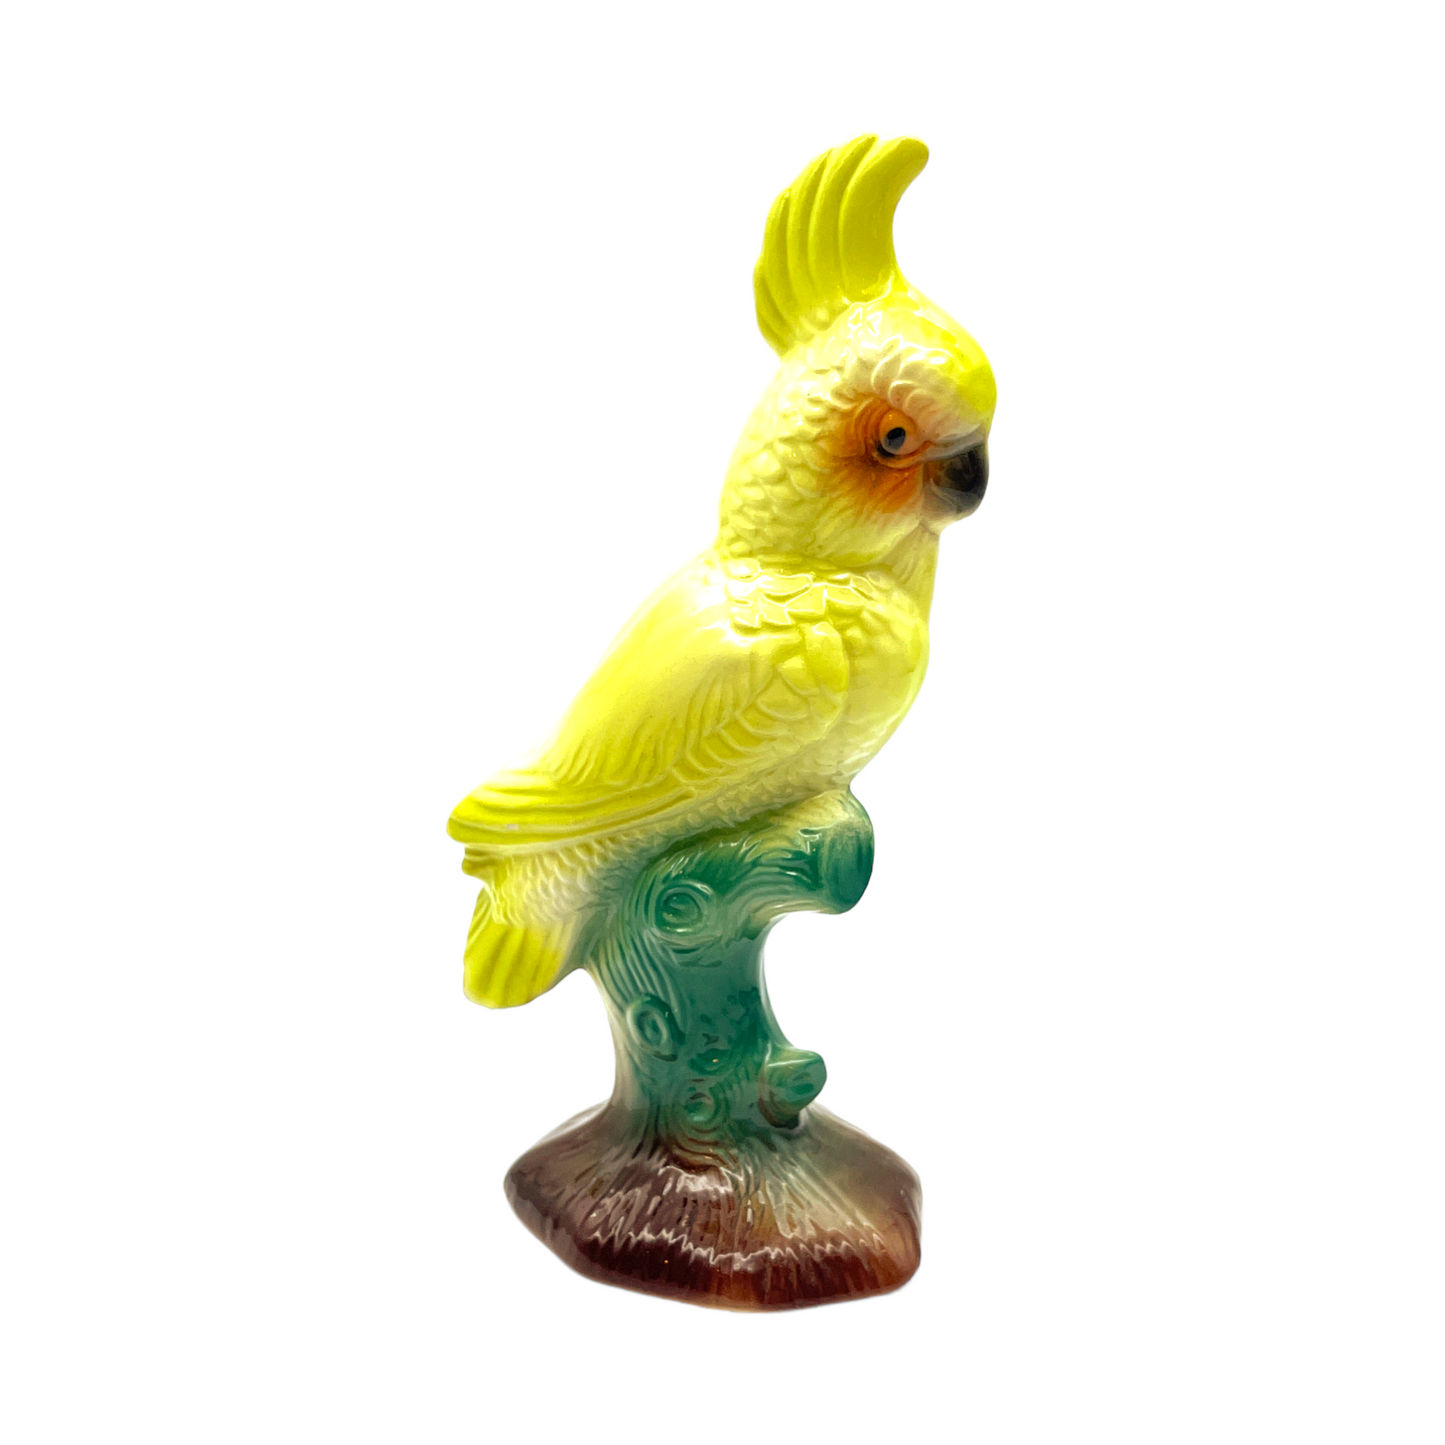 William Maddux - Lime Green Cockatoo Figurine - Vintage - 7"